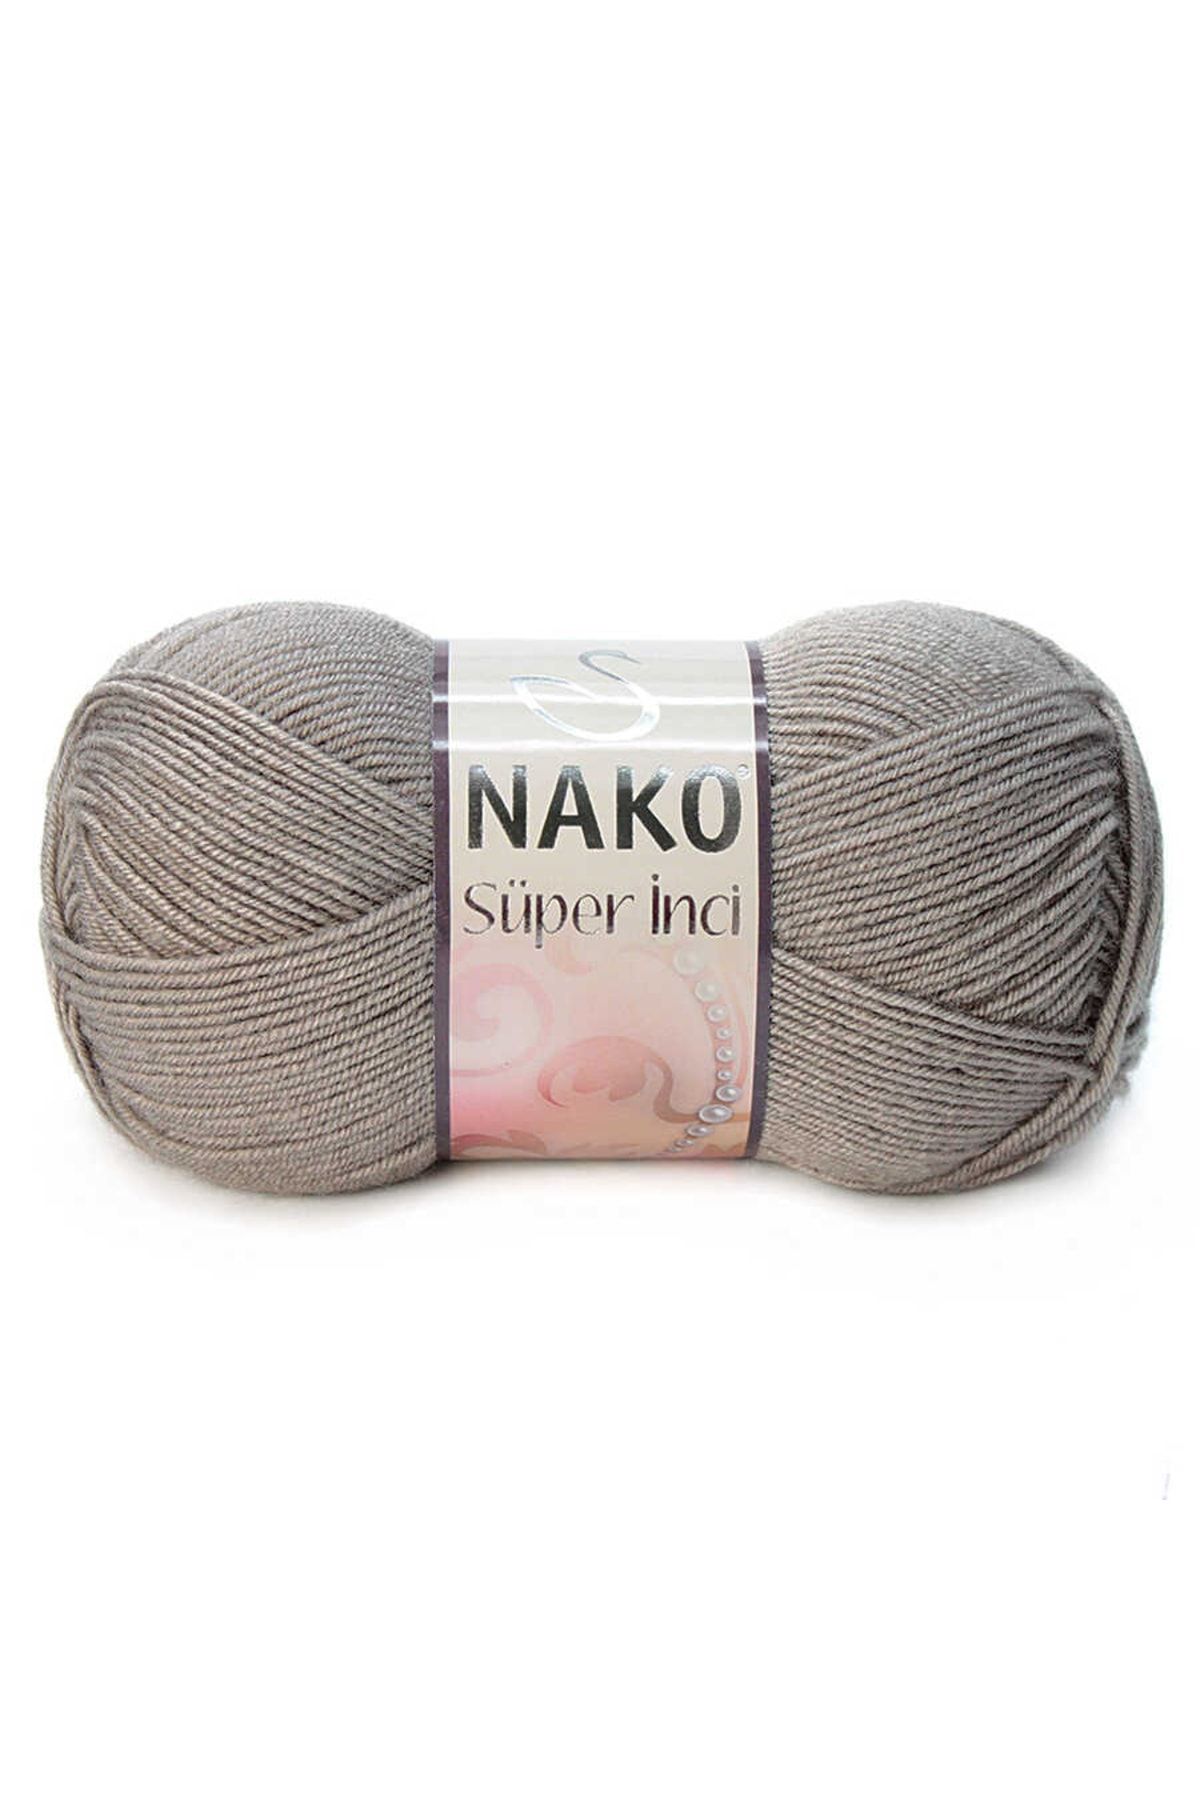 Nako Süper Inci 02000 ( 5 Adet ) El Örgü Ipi